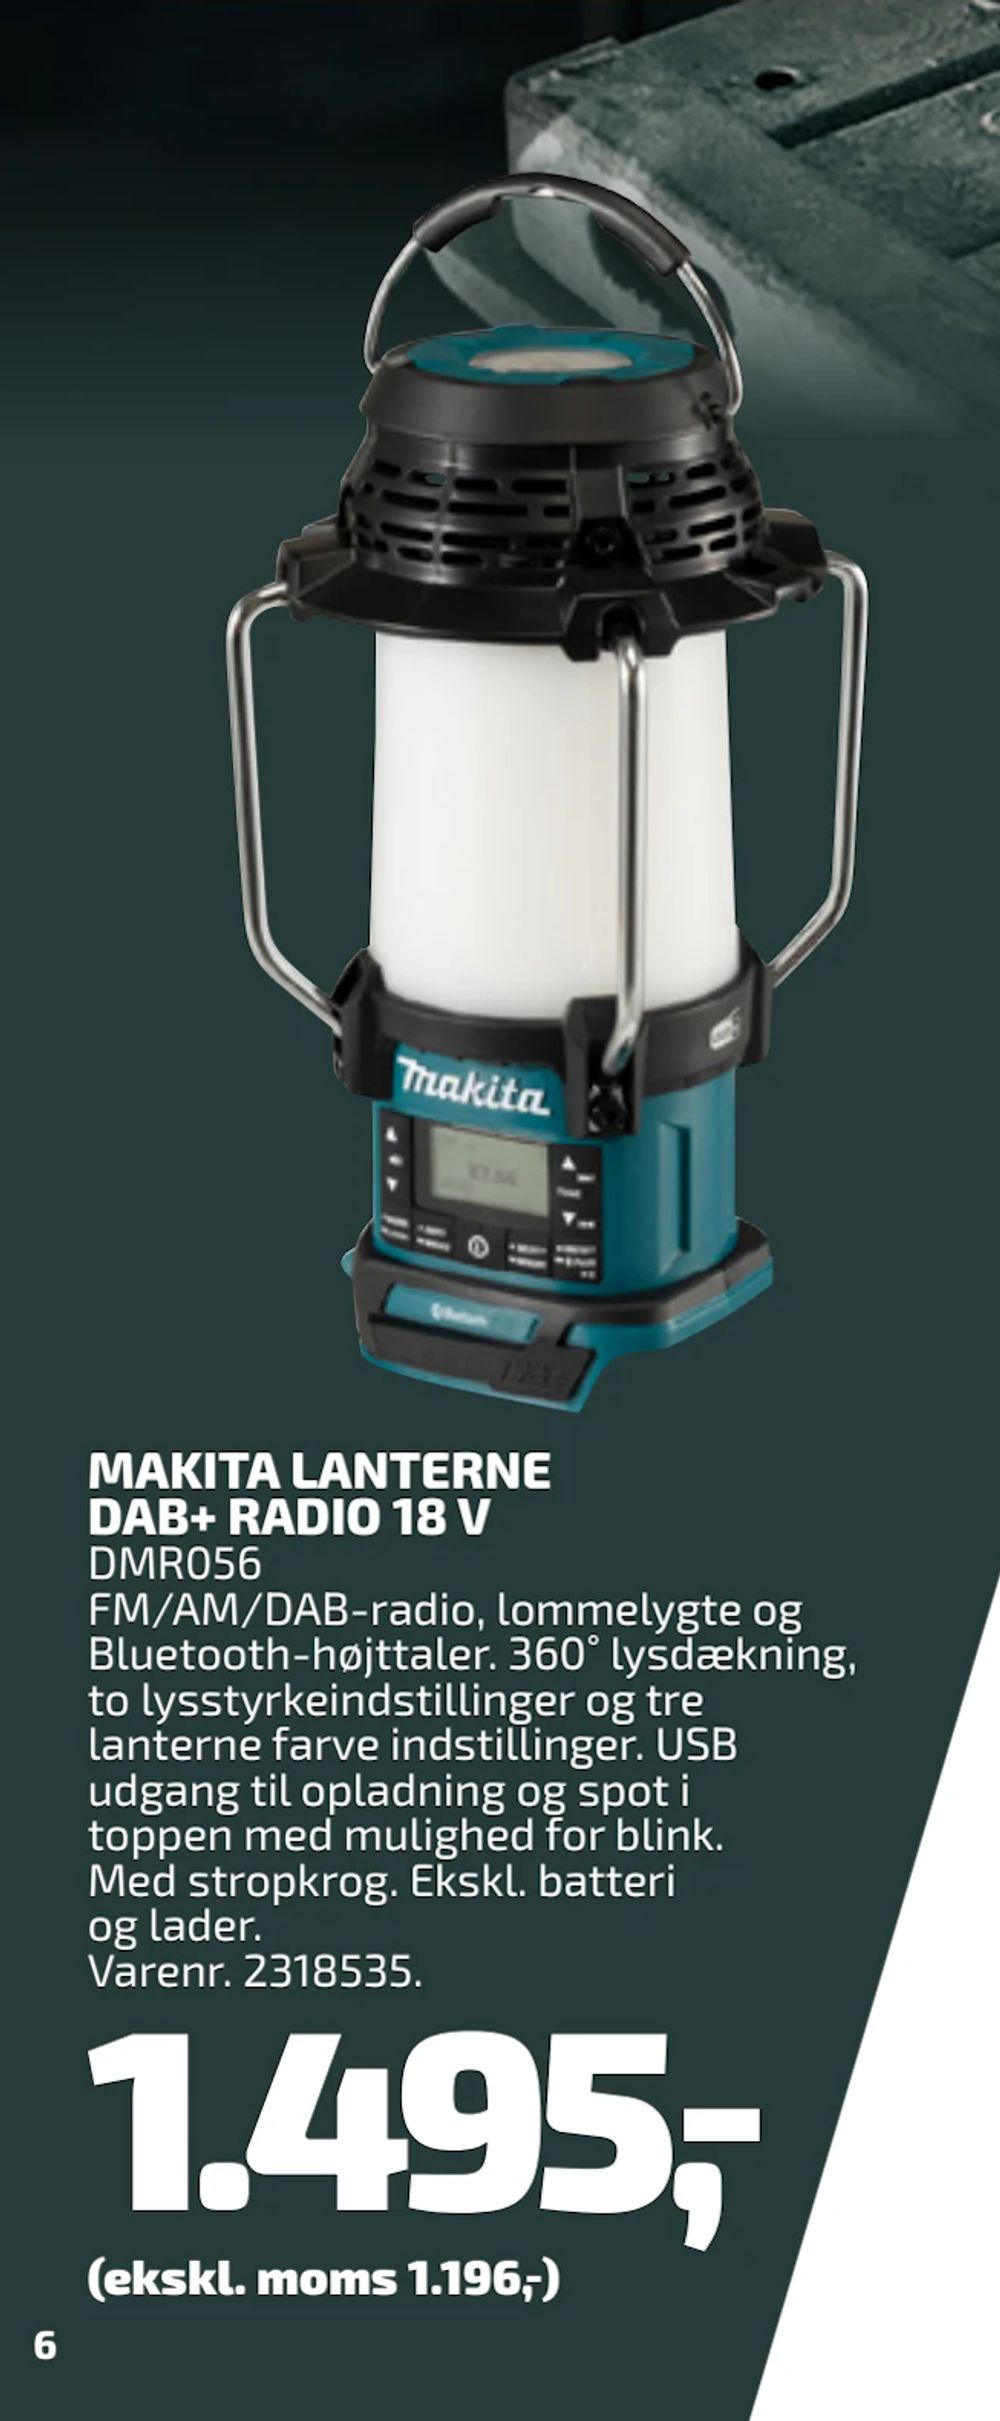 Tilbud på MAKITA LANTERNE DAB+ RADIO 18 V fra Davidsen til 1.495 kr.